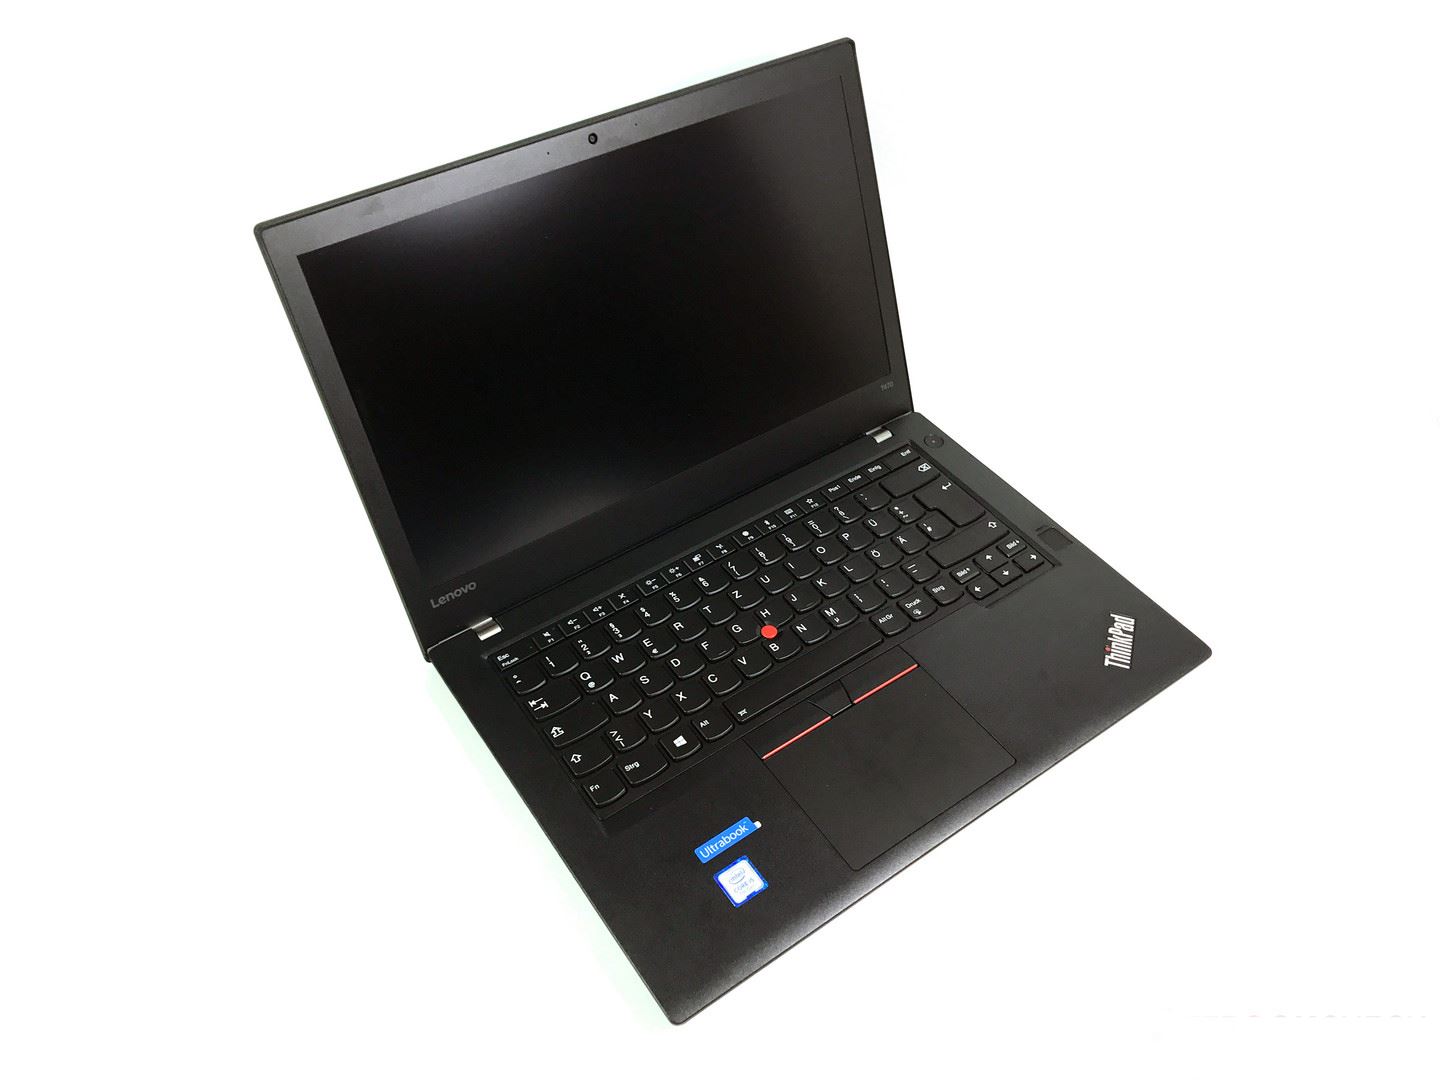 ThinkPad T470商务本值得买吗？ThinkPad T470全面图解评测及拆解